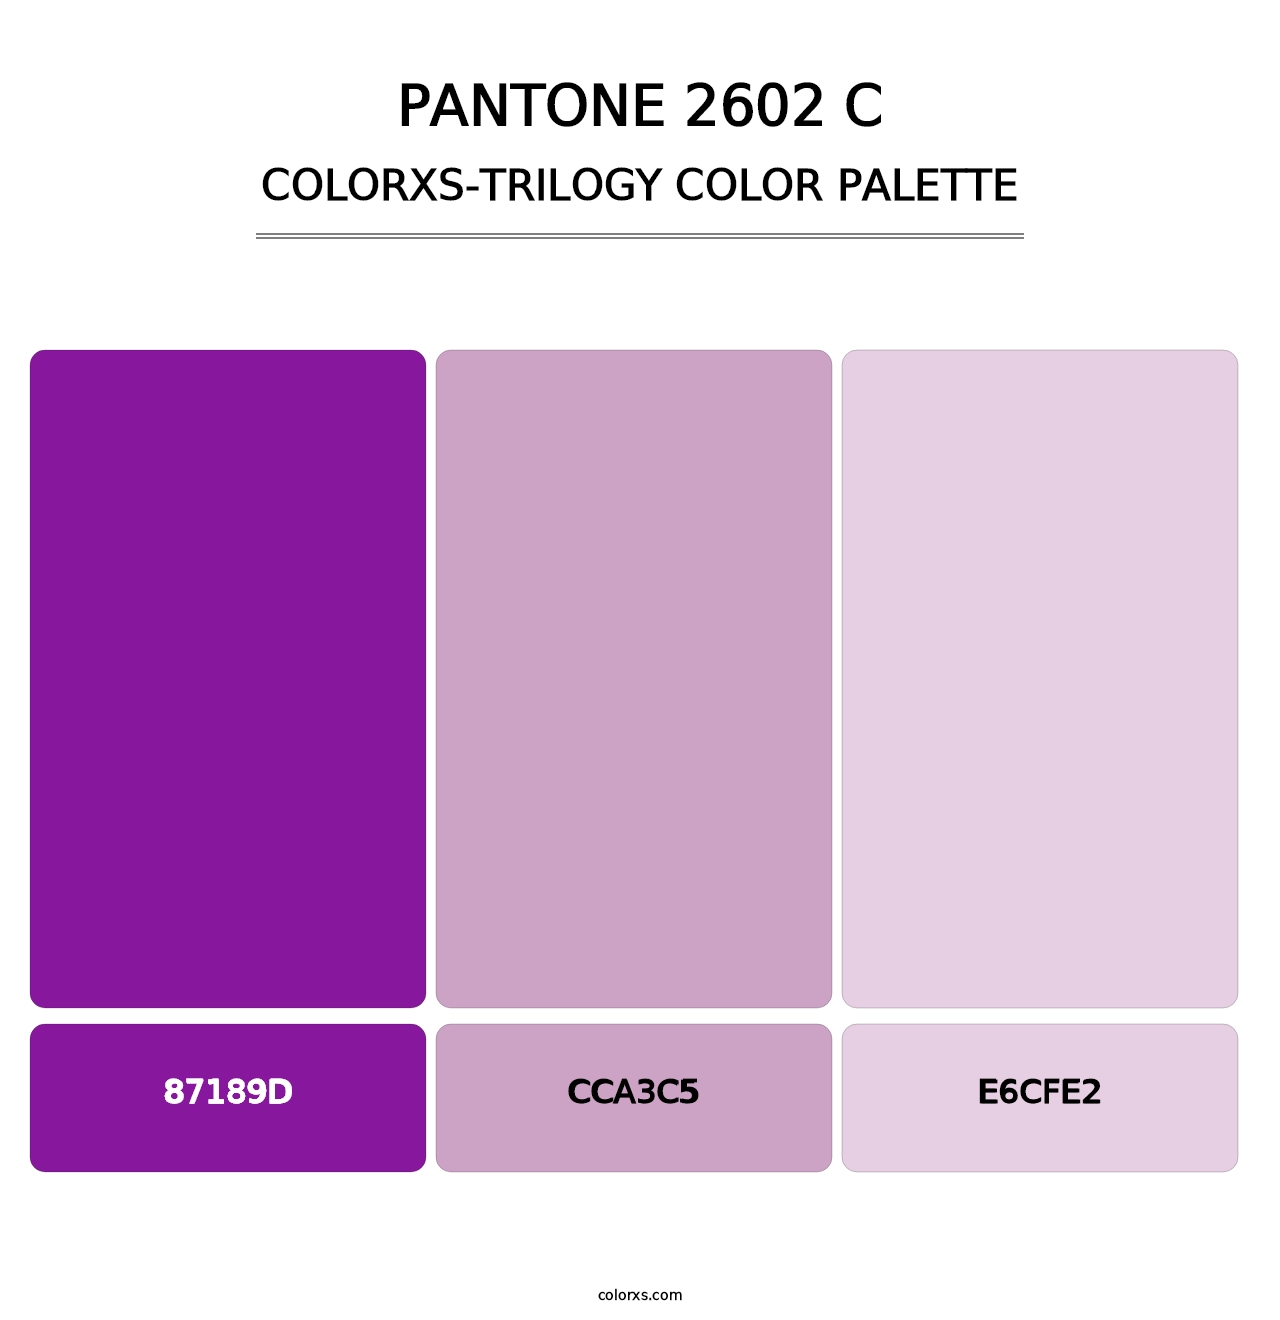 PANTONE 2602 C - Colorxs Trilogy Palette